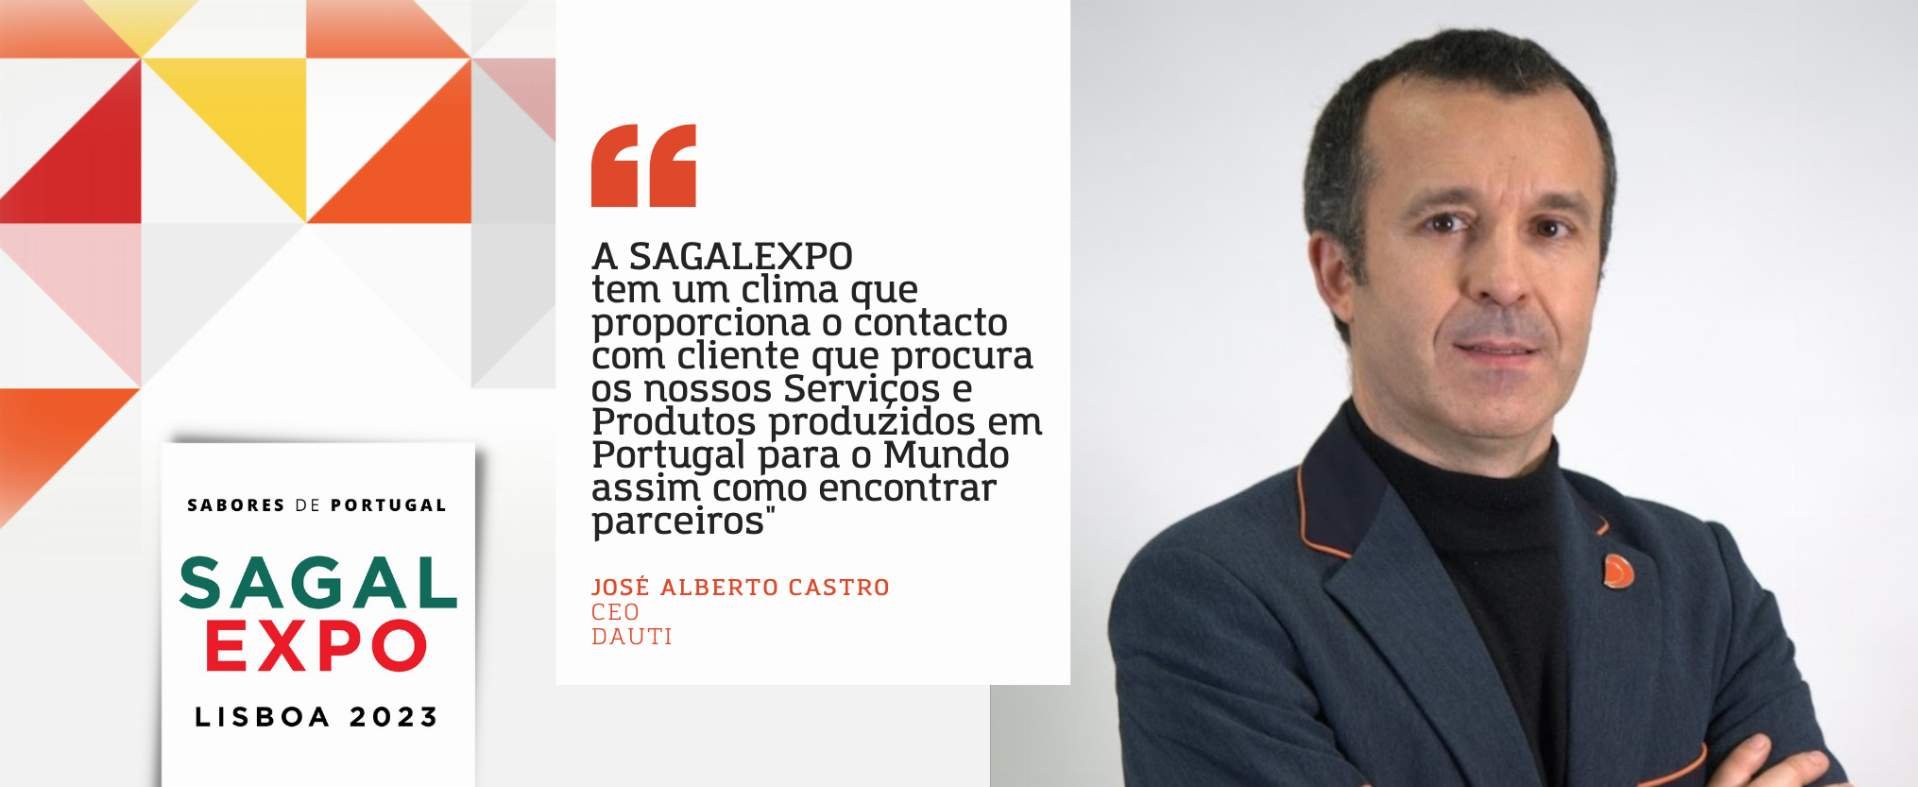 DAUTI: “A SAGALEXPO tem um clima que proporciona o contacto com cliente que procura os nossos Serviços e Produtos produzidos em Portugal para o Mundo assim como encontrar parceiros”